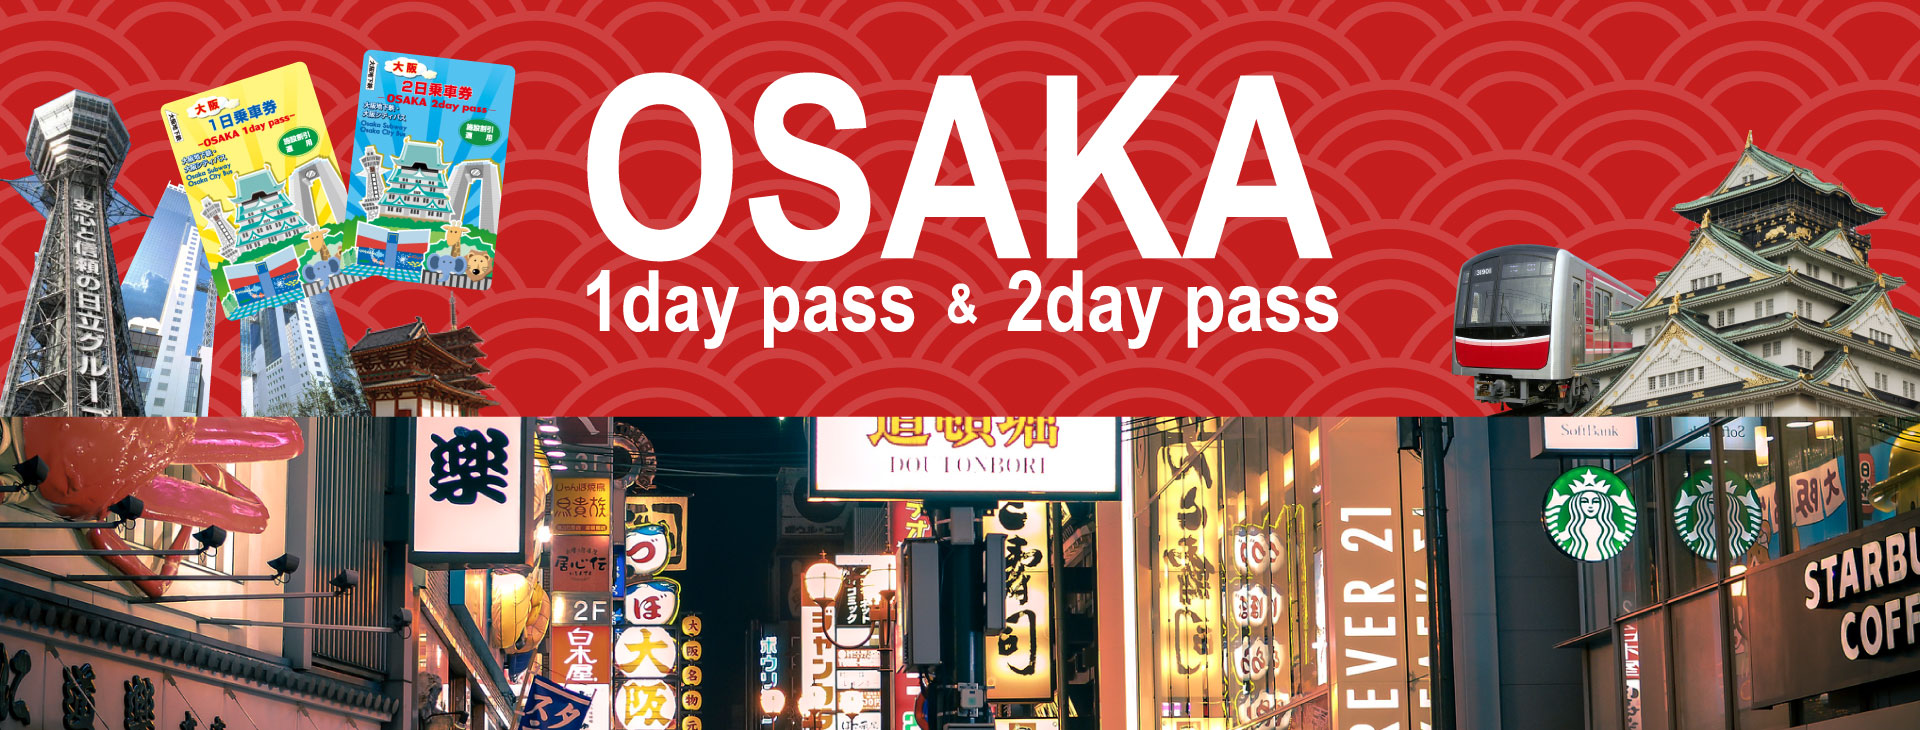 บัตร Osaka 1/2 Day Pass, ซื้อตั๋ว Osaka 1/2 Day Pass, ตั๋วโอซาก้า วันเดย์/ทูเดย์ พาส, เที่ยวโอซาก้า, เที่ยวญี่ปุ่น, โปรญี่ปุ่น, โอซาก้าราคาถูก